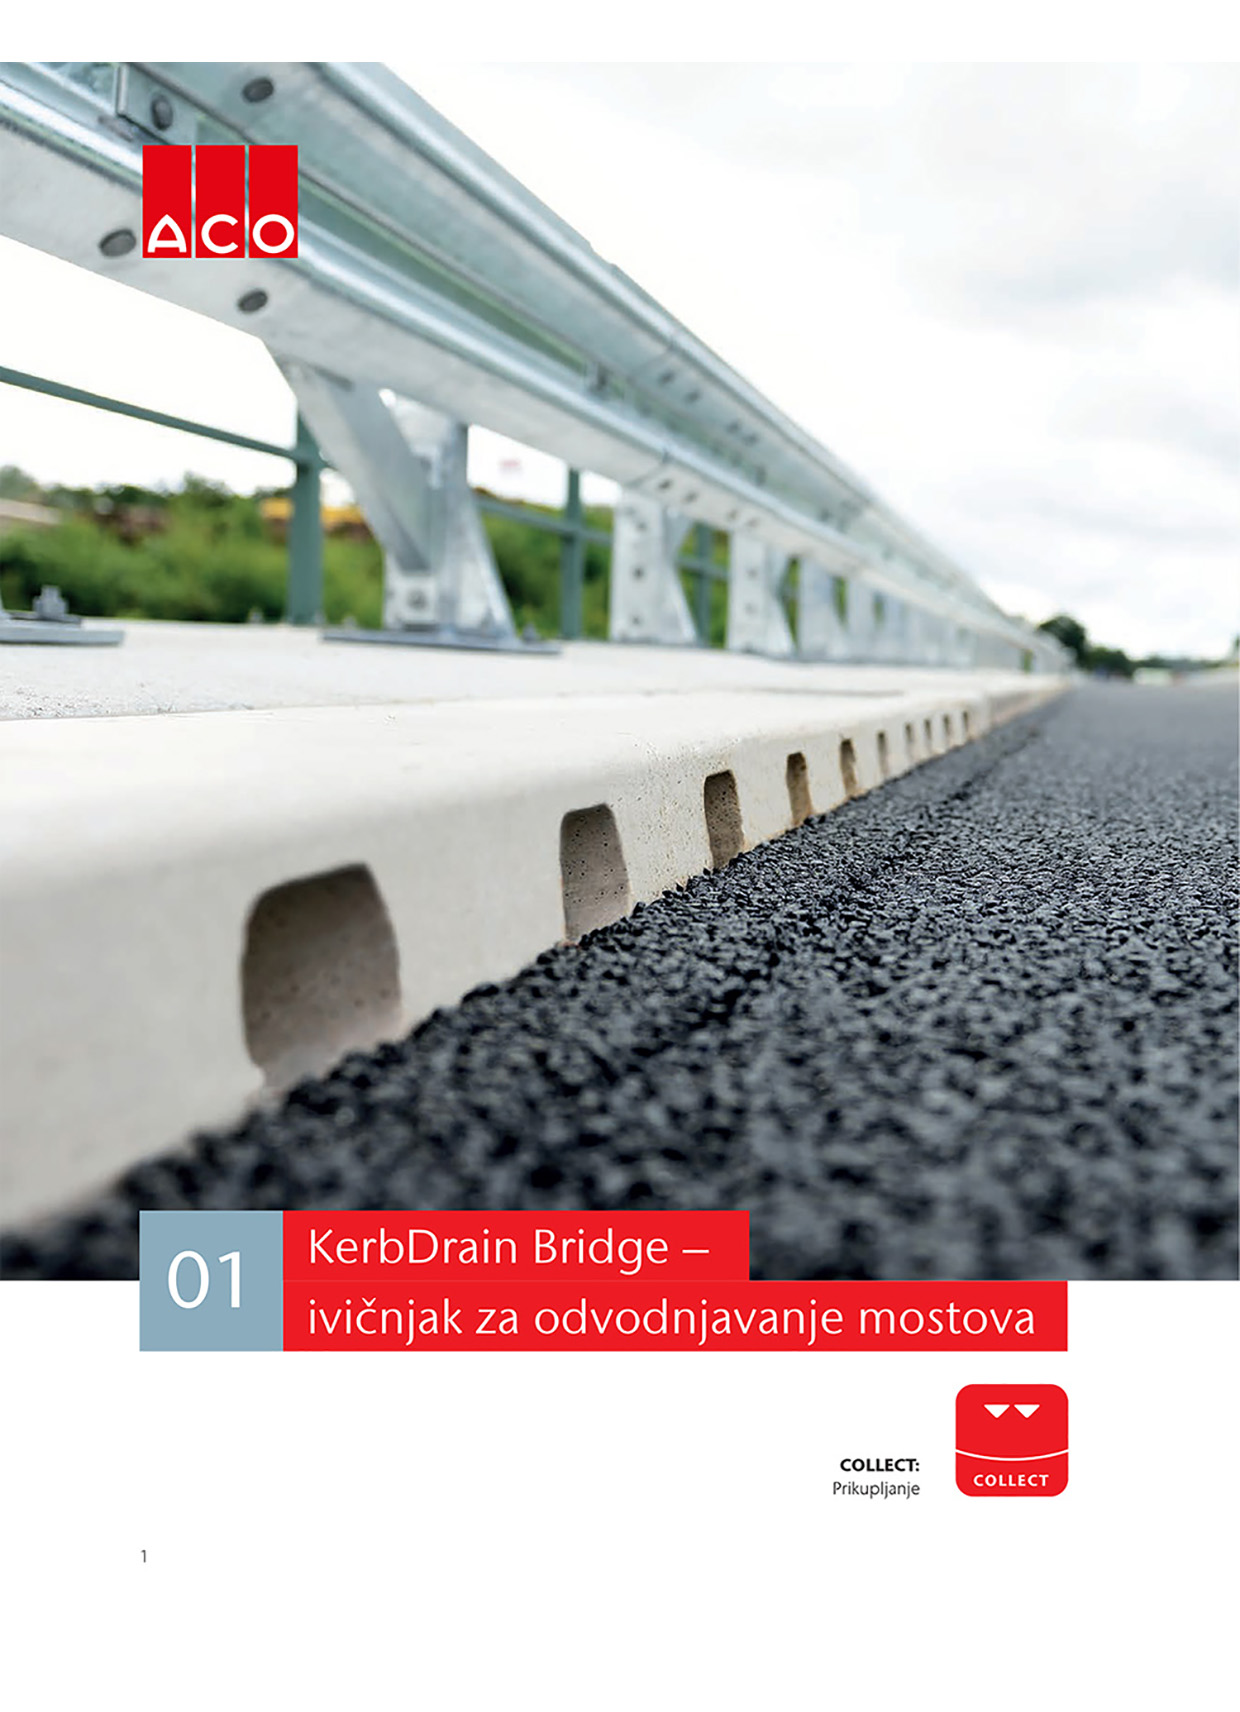 ACO KerbDrain Bridge brošura